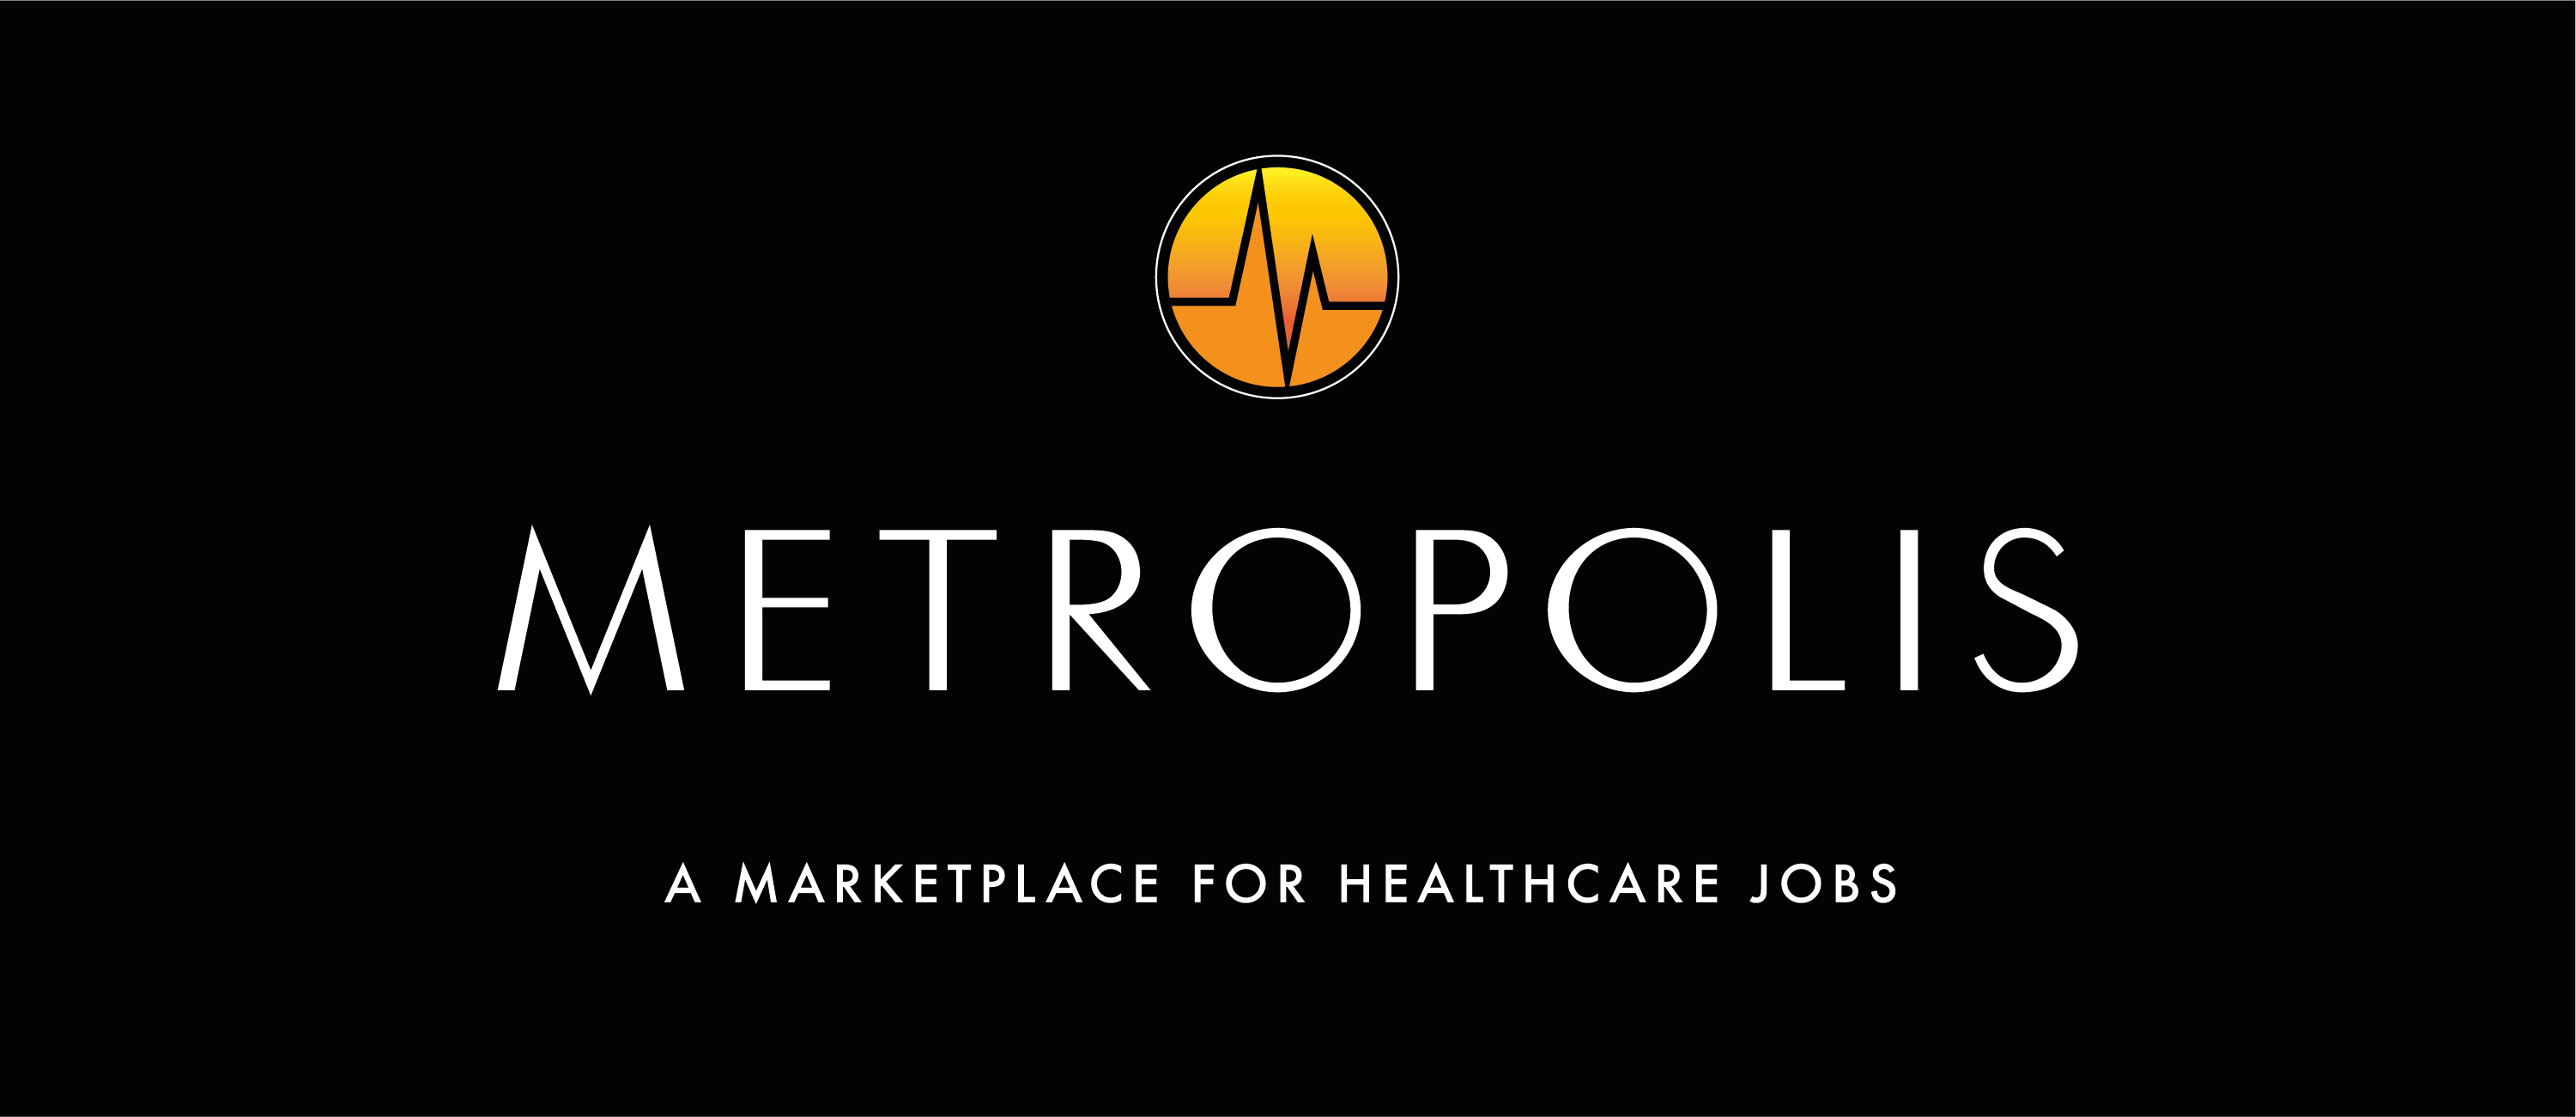 Metropolis-logo-negative